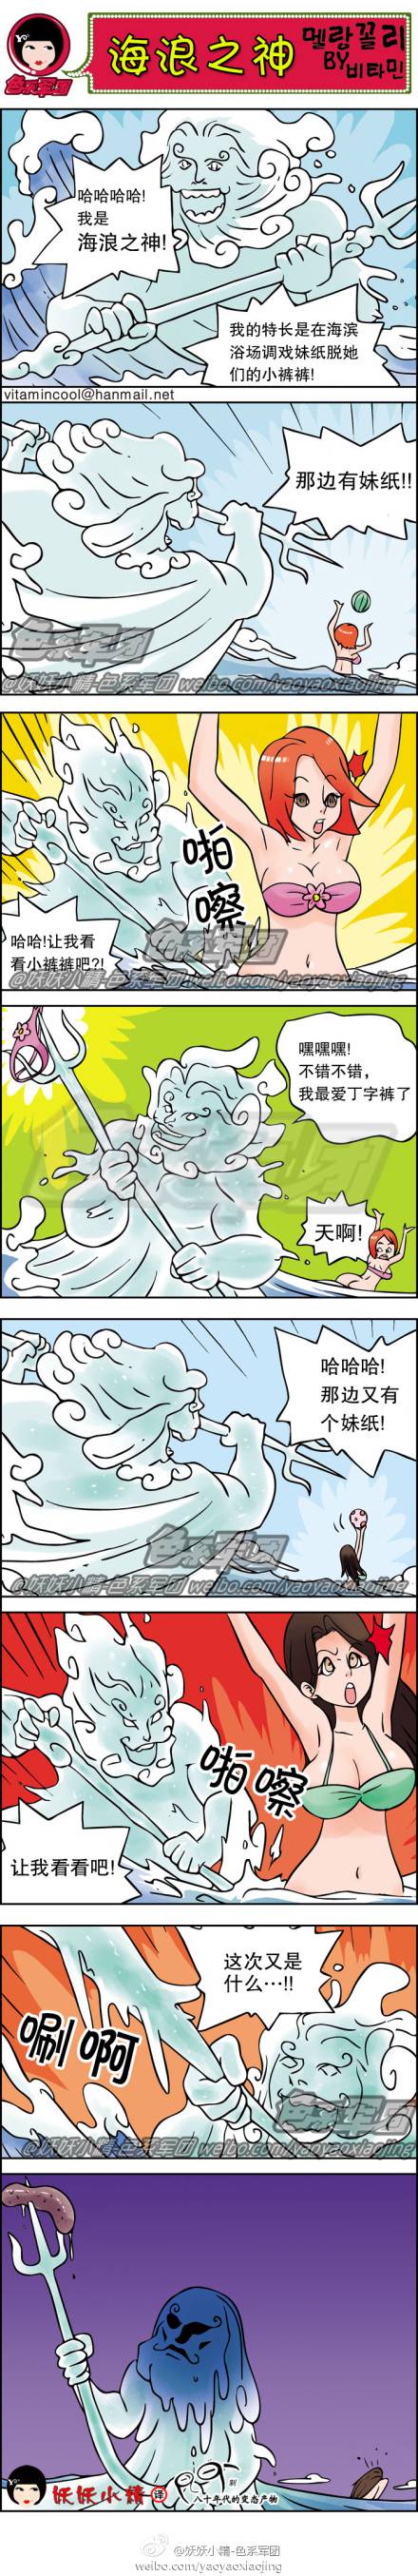 邪恶漫画爆笑囧图第43刊：海神的捉弄